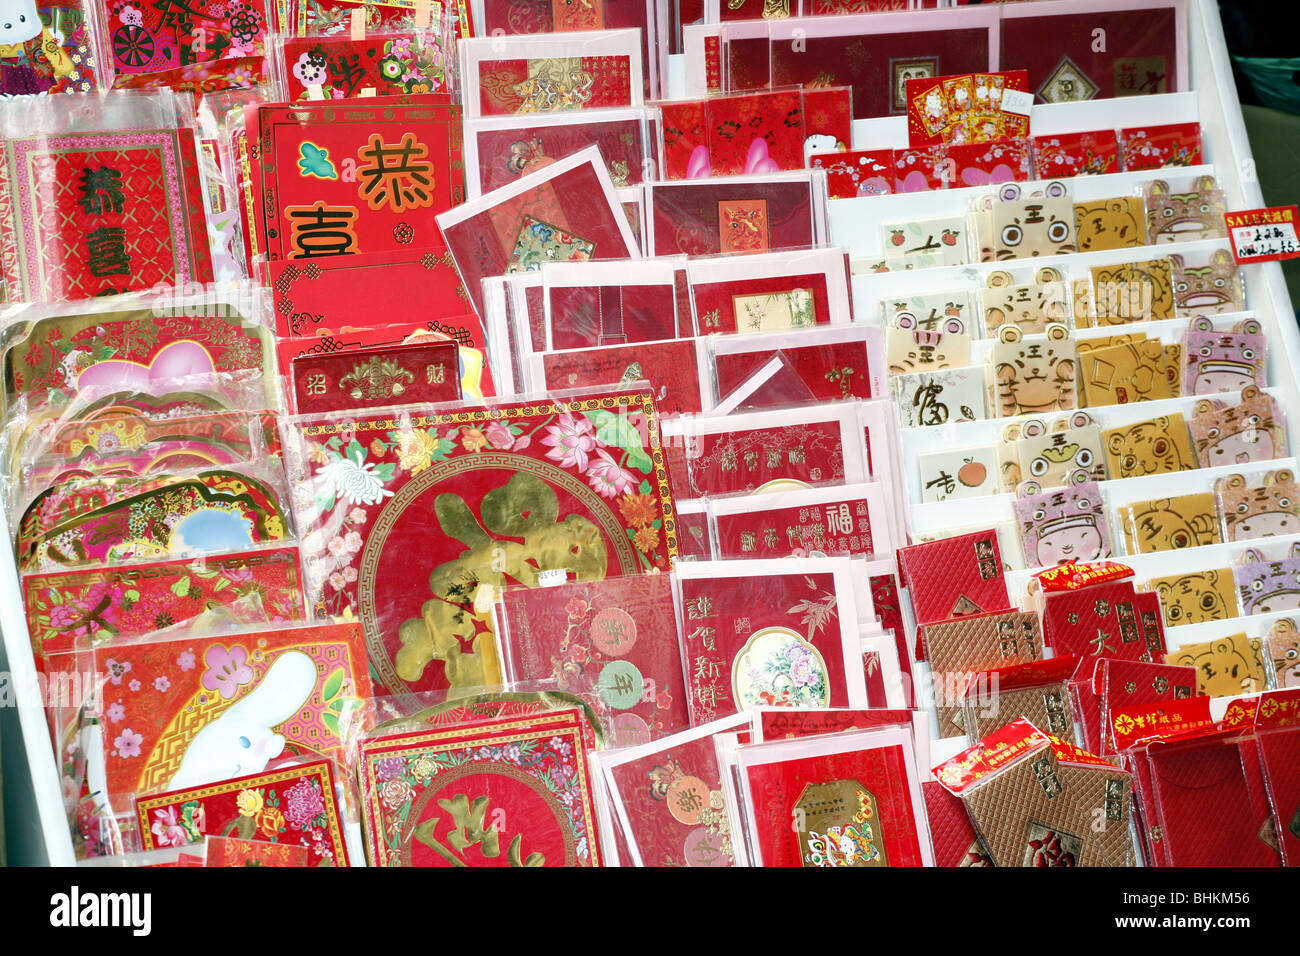 Chinesisches Neujahr 2010 in der Gerrard Street, Chinatown, London, England - Chinese New Year Karten Stockfoto